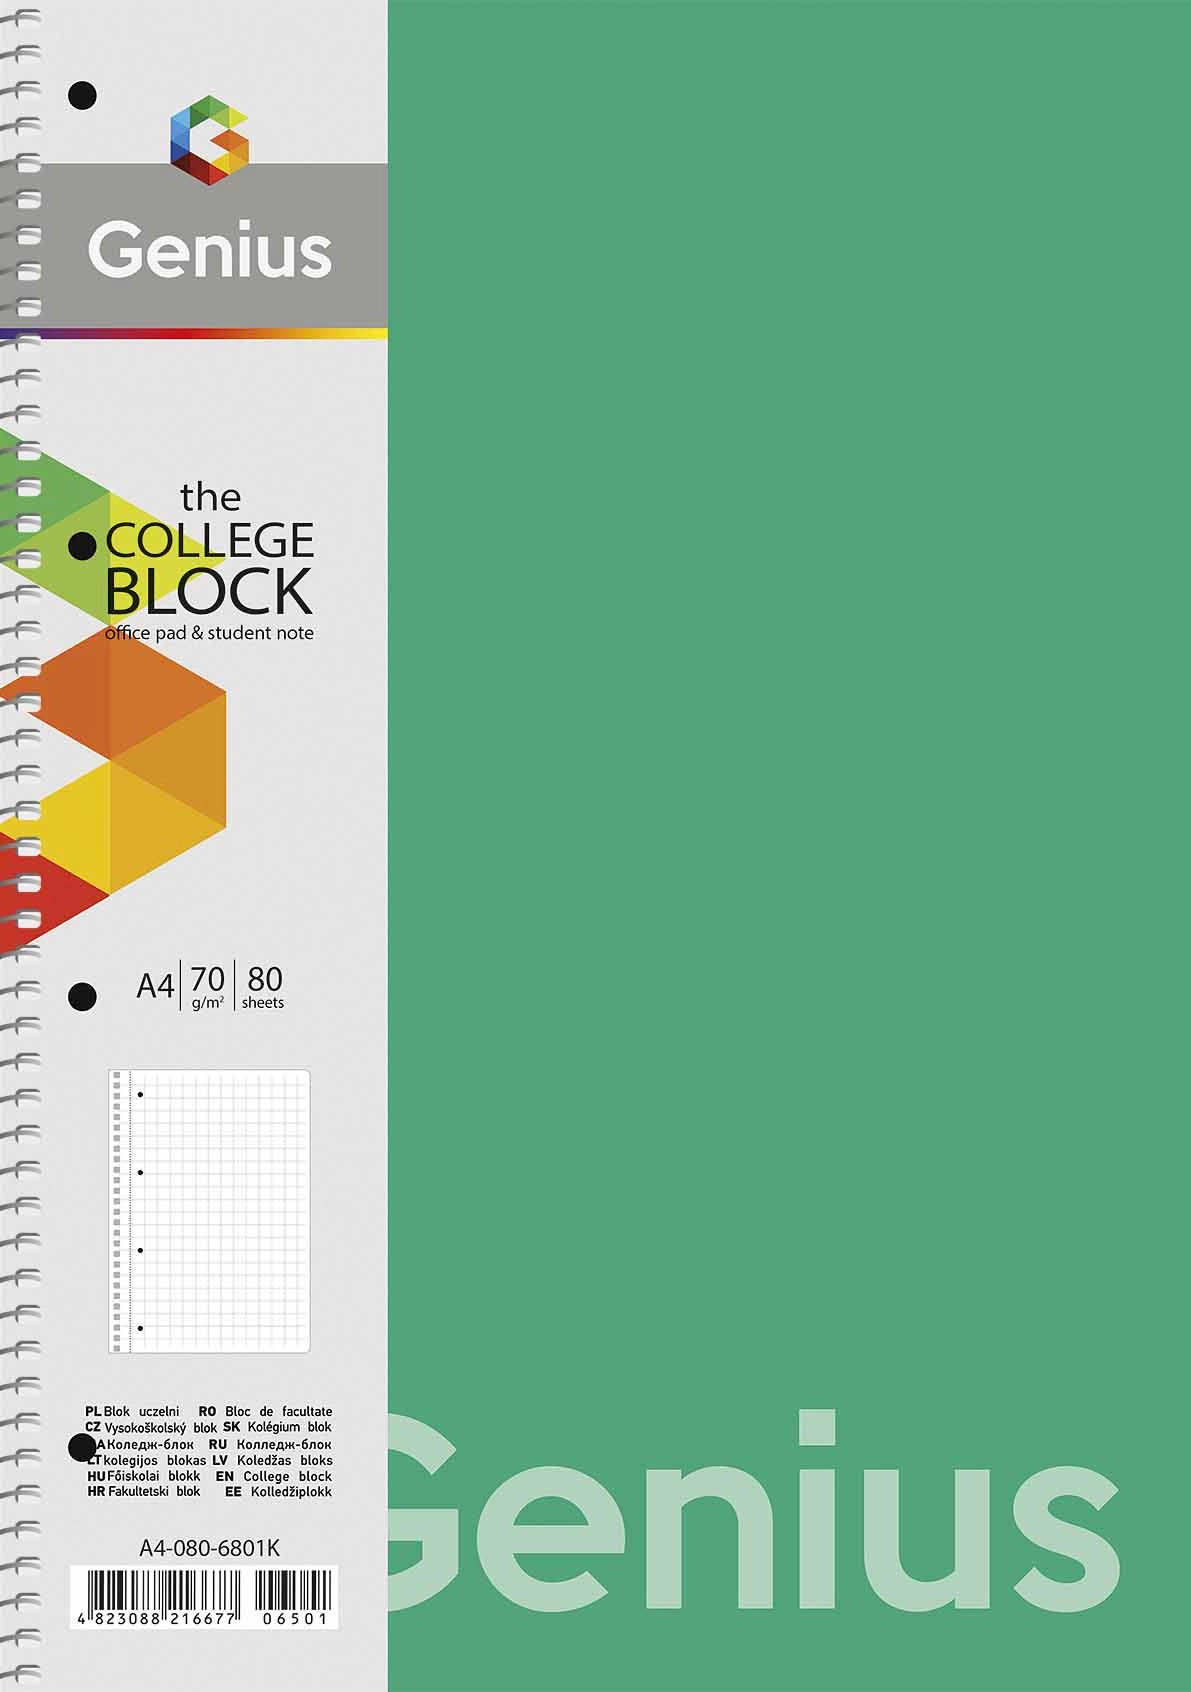 Коледж-блок, спiраль, А4/80арк., у клітинку A4-080-6803K Genius